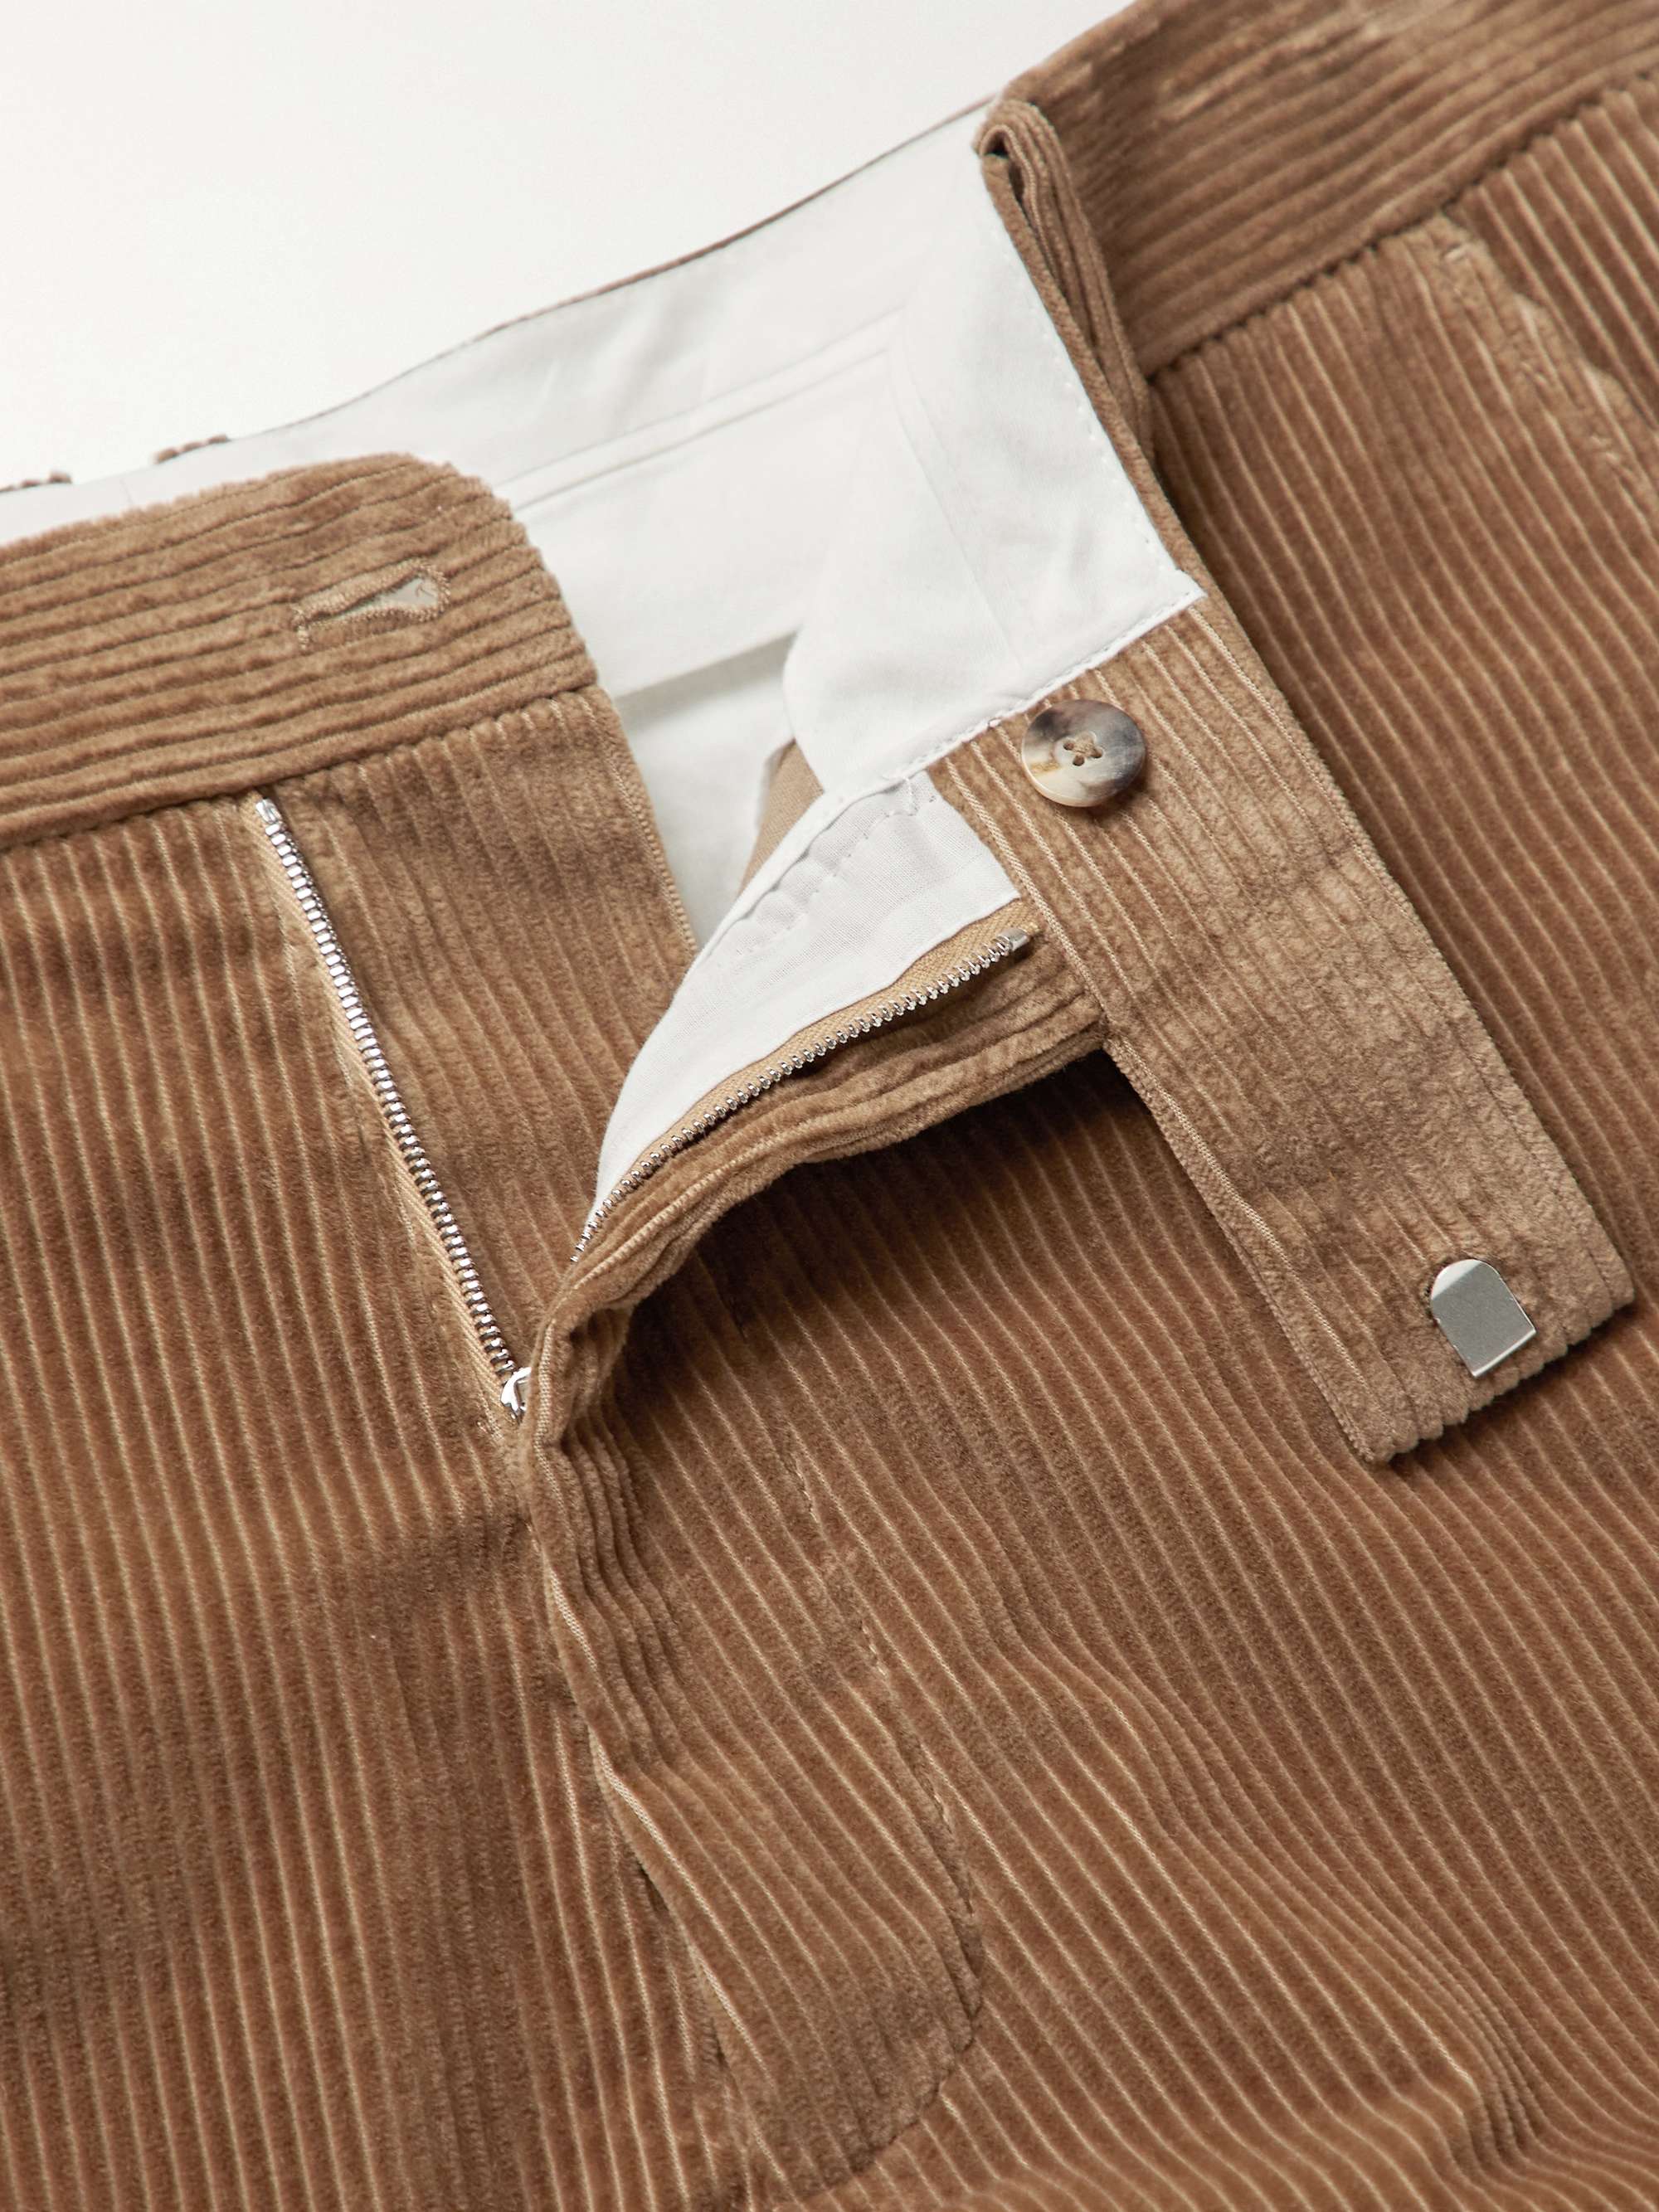 THE ROW Elijah Cotton-Blend Corduroy Trousers